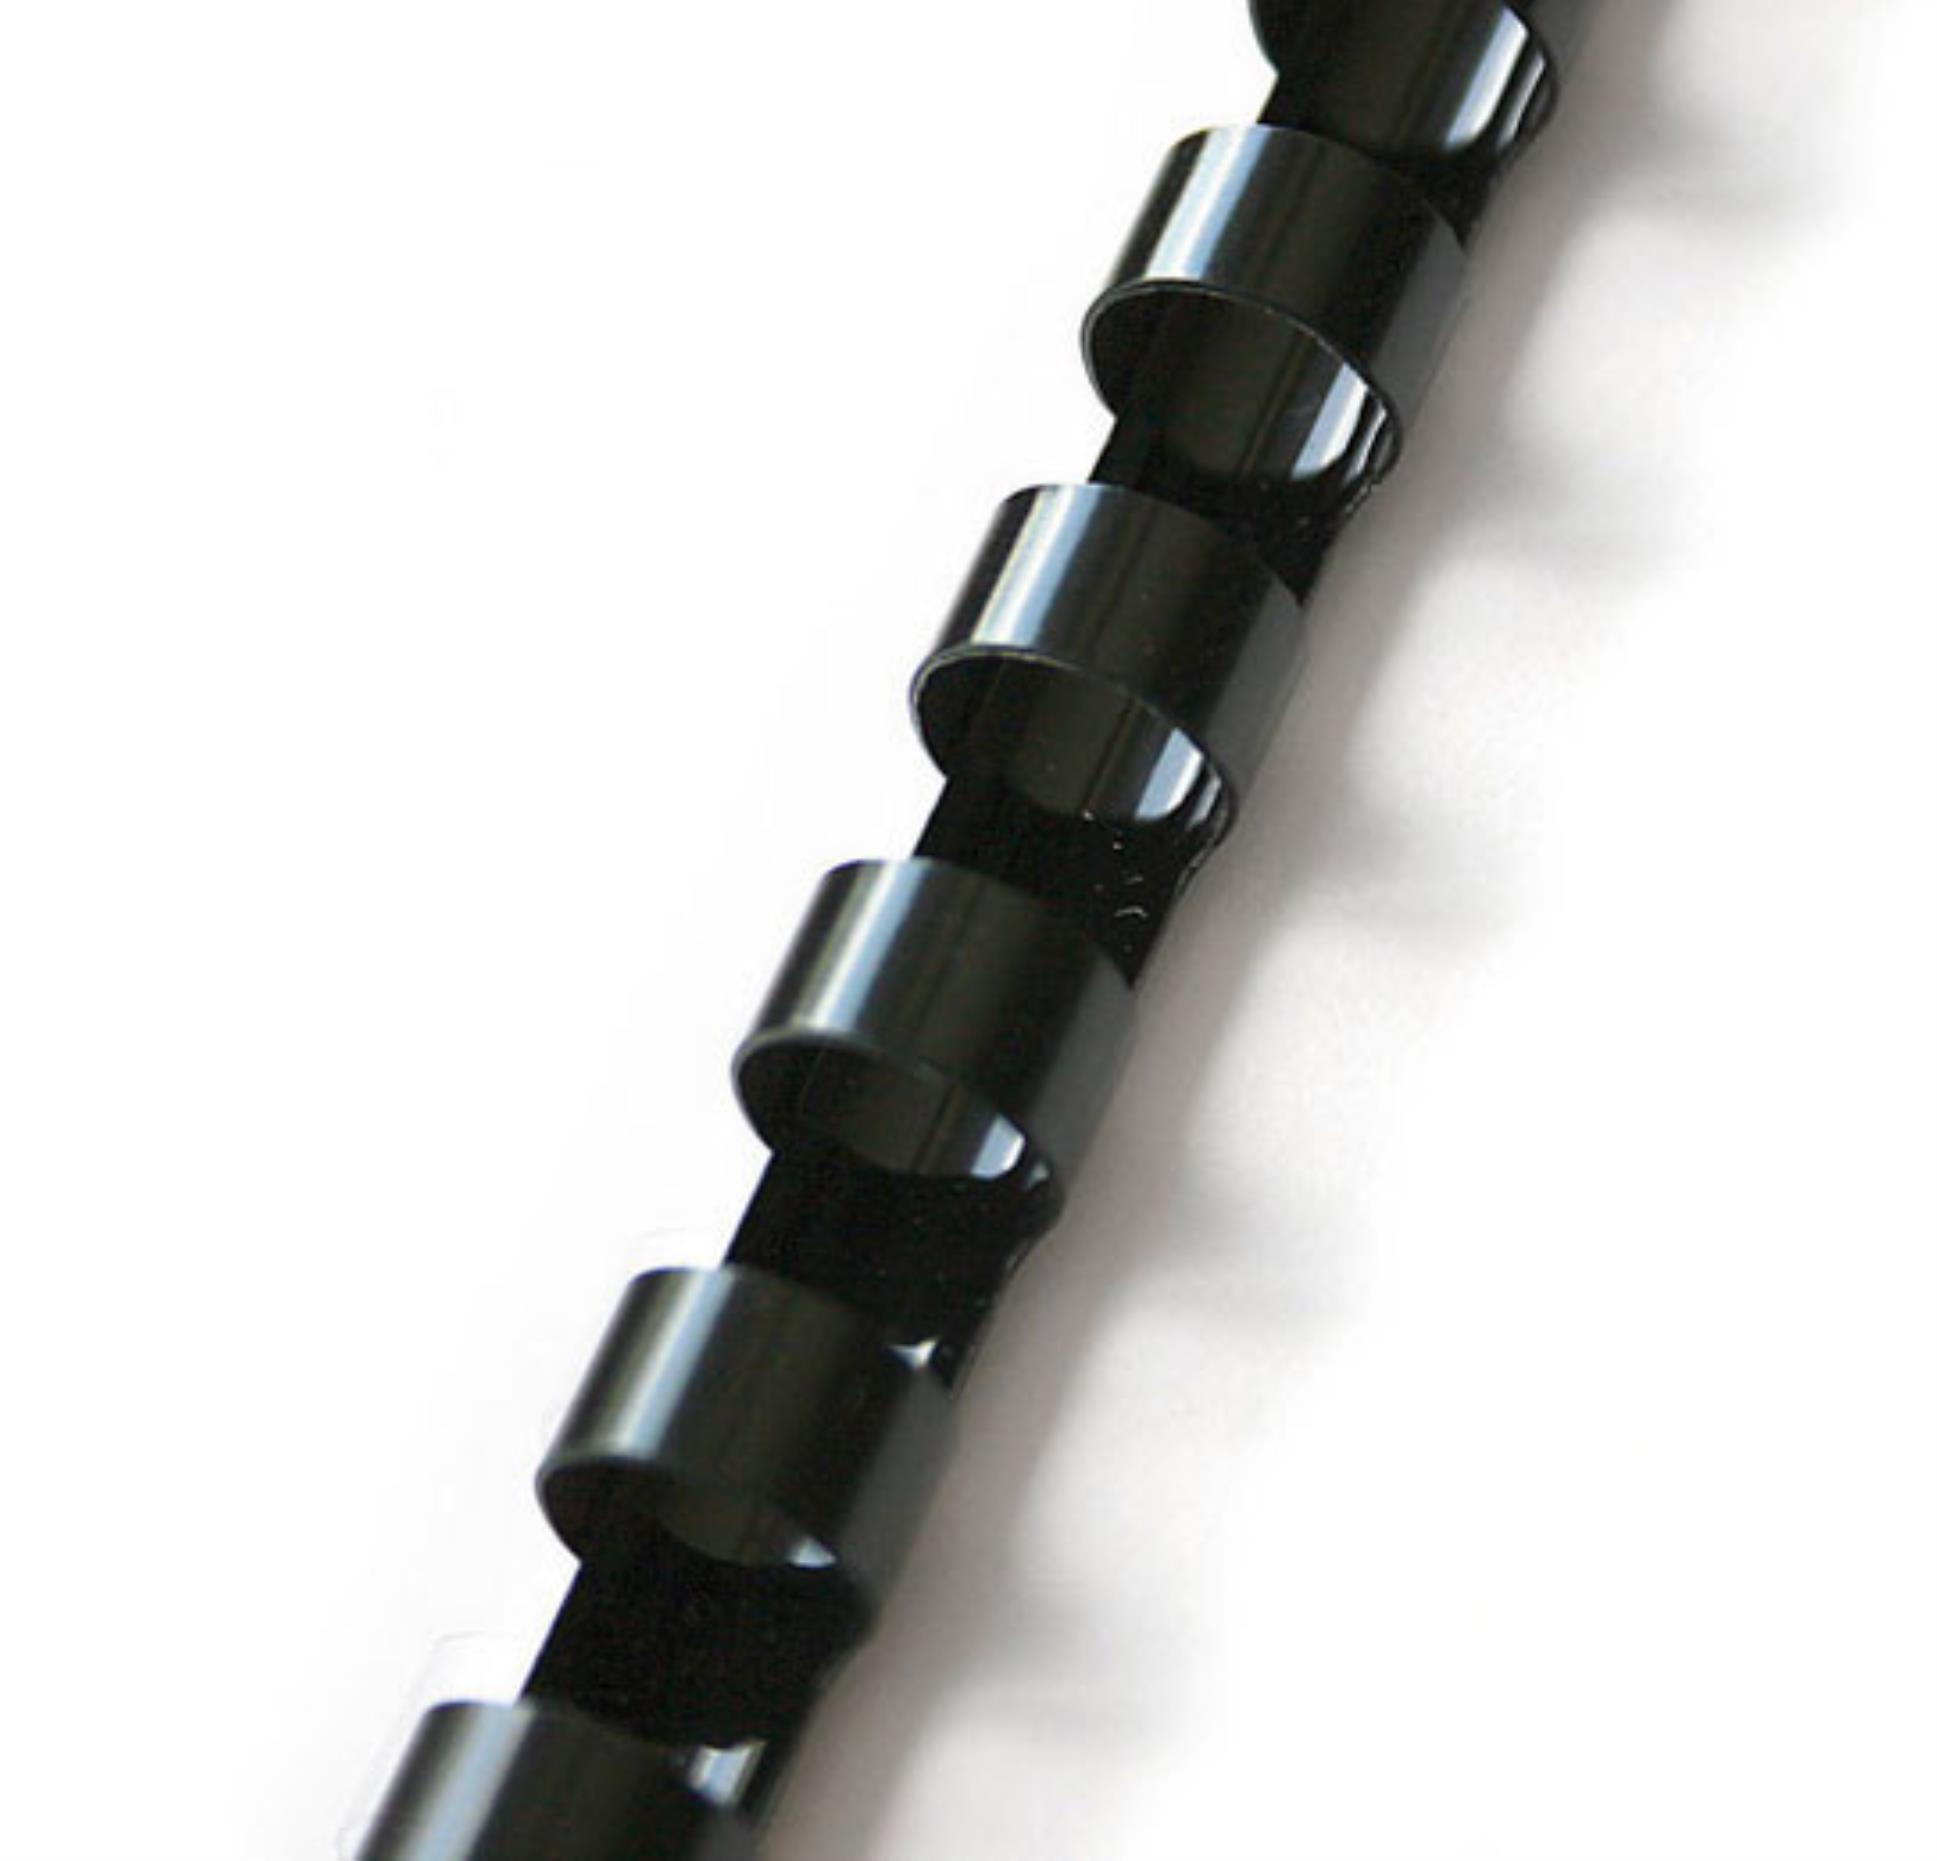 Plastové hřbety Q-Connect, 12 mm, černé, 100 ks